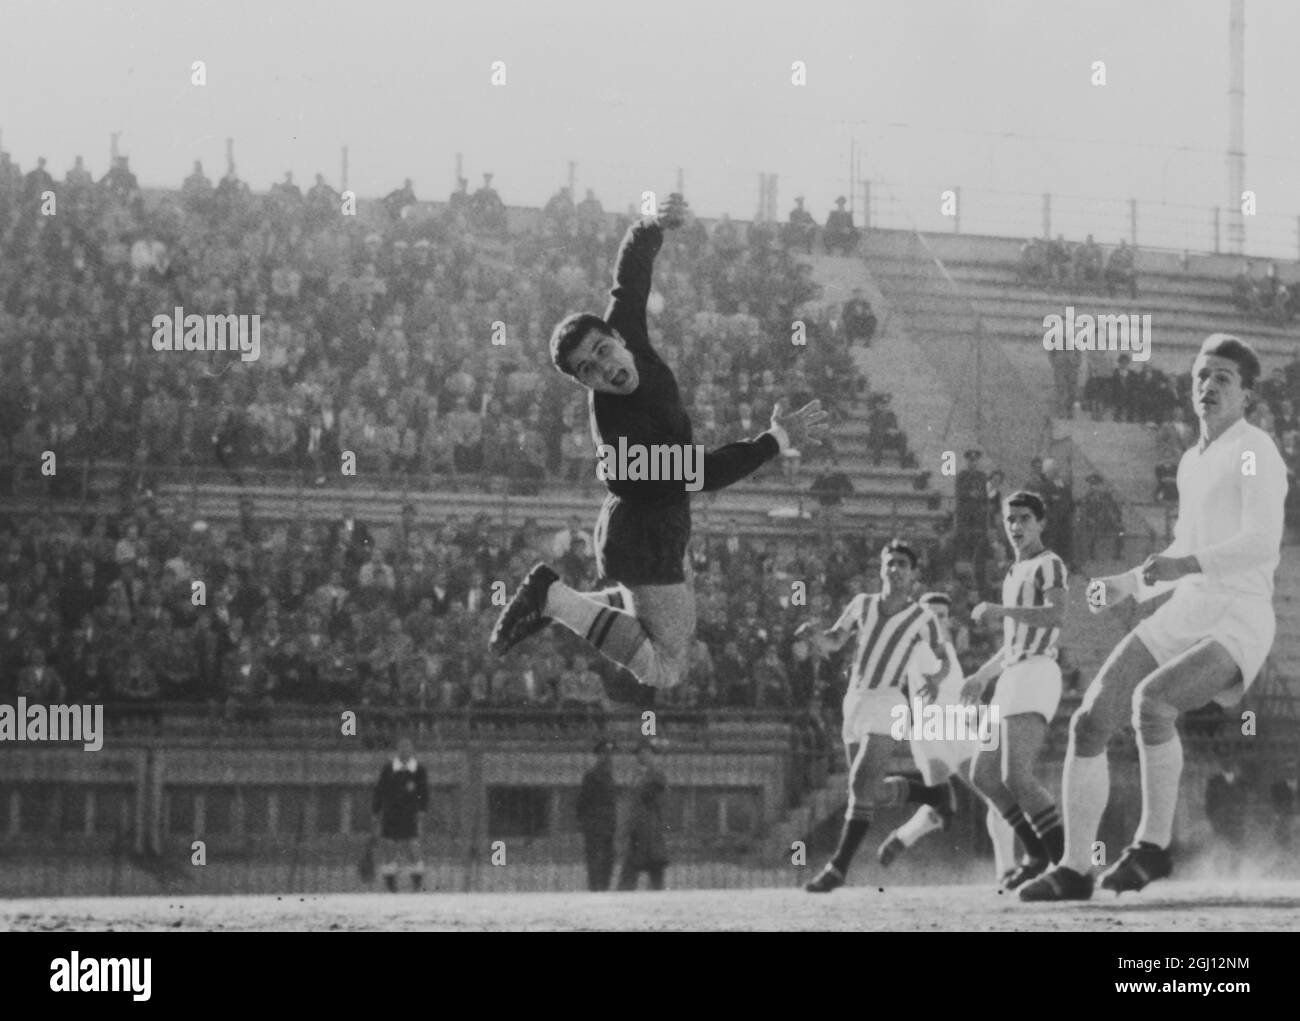 FUSSBALL-EUROPAMEISTERSCHAFT GRIECHISCH V CZECHSLOVAKIA TSCHECHEN ERSTES TOR 24. NOVEMBER 1961 Stockfoto